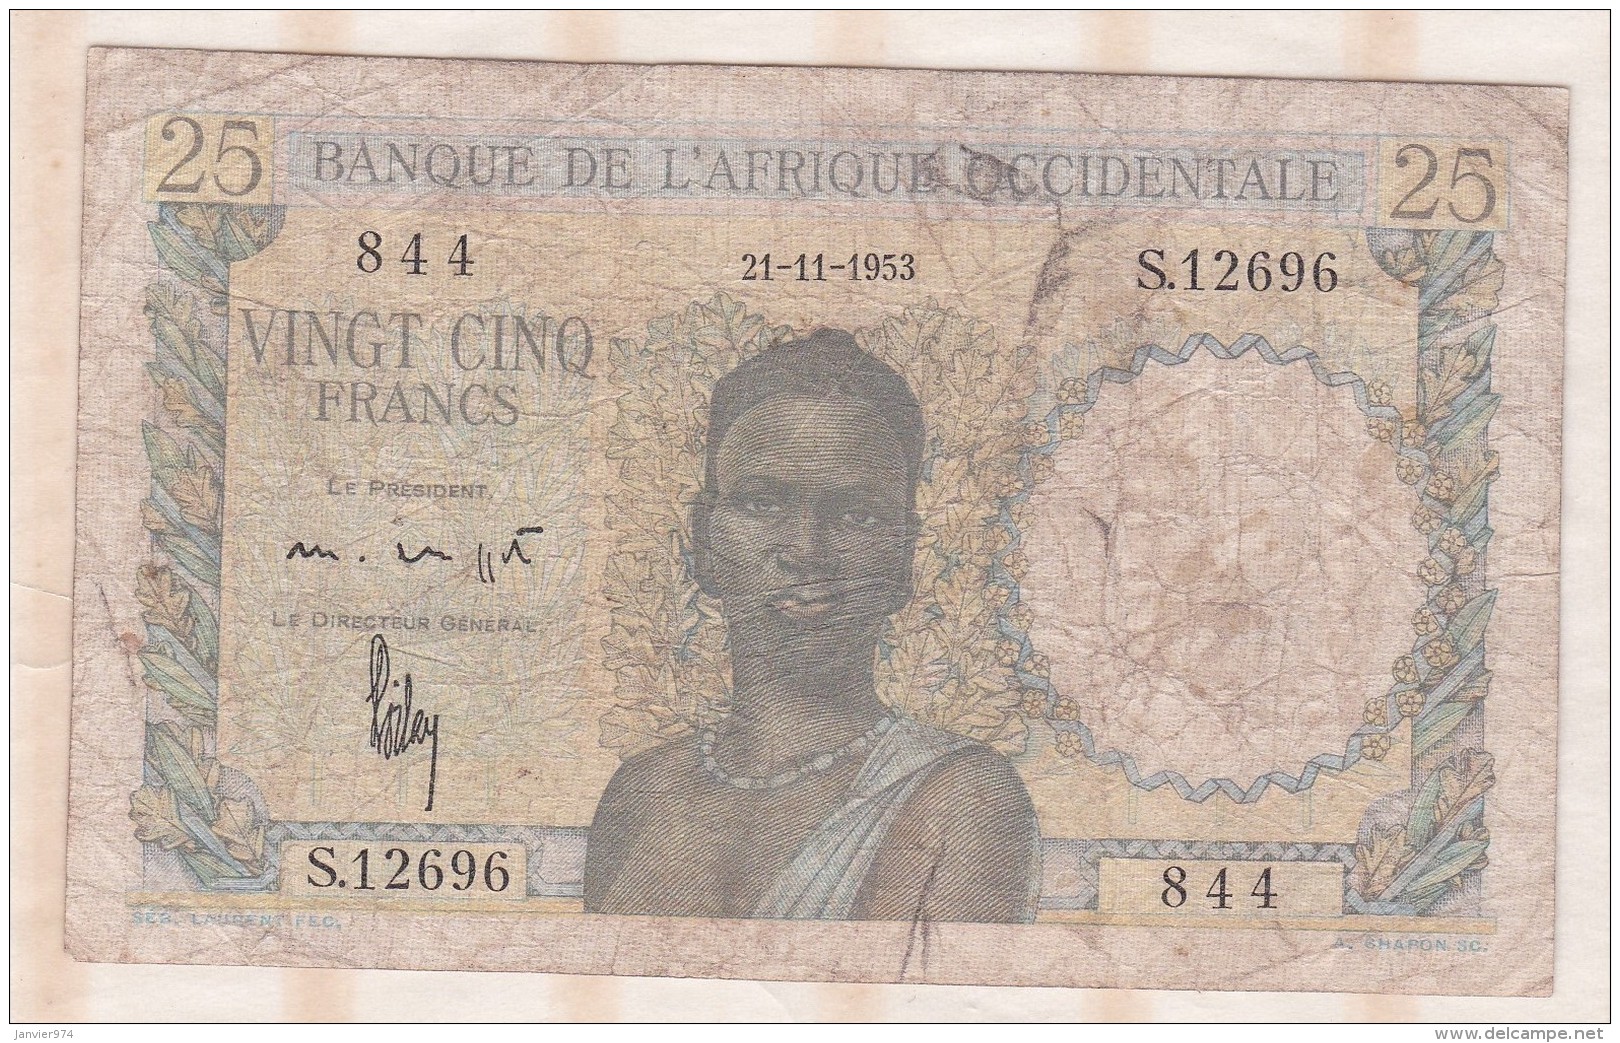 Banque De L&acute;Afrique Occidentale, 25 Francs Du 21 11 1953 , Alphabet S.12696 ,n° 844 - Other - Africa